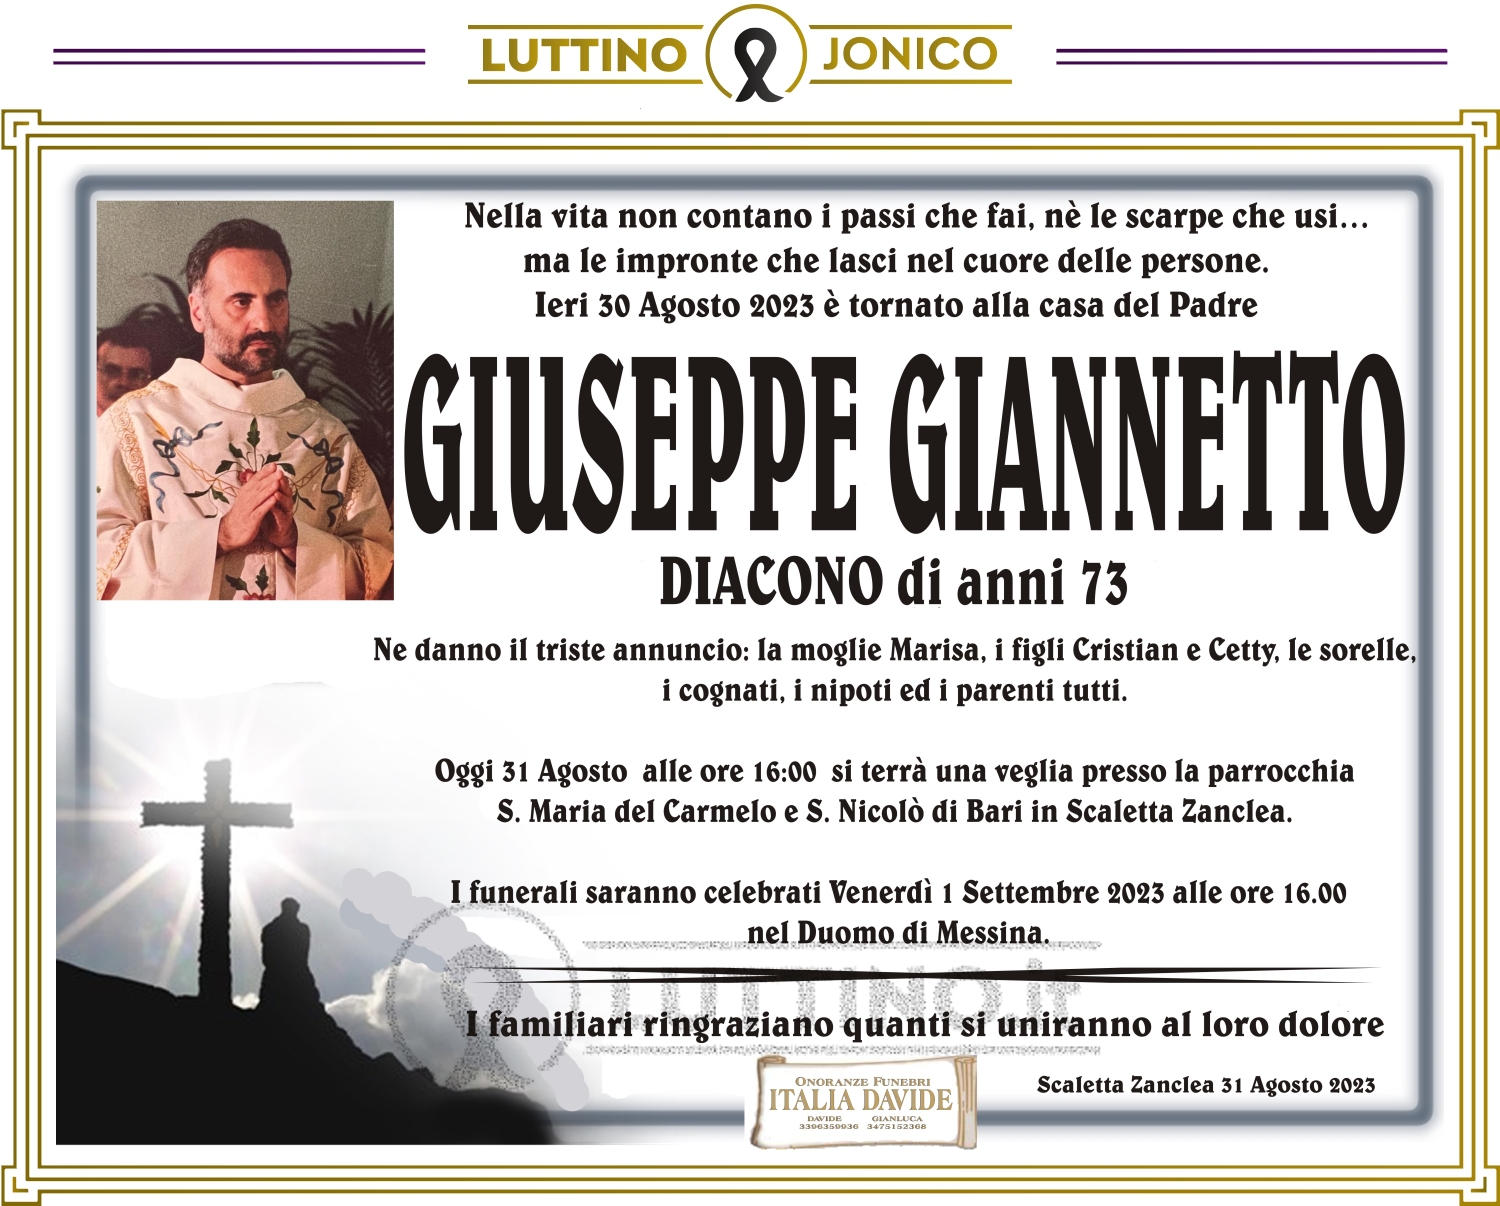 Giuseppe Giannetto